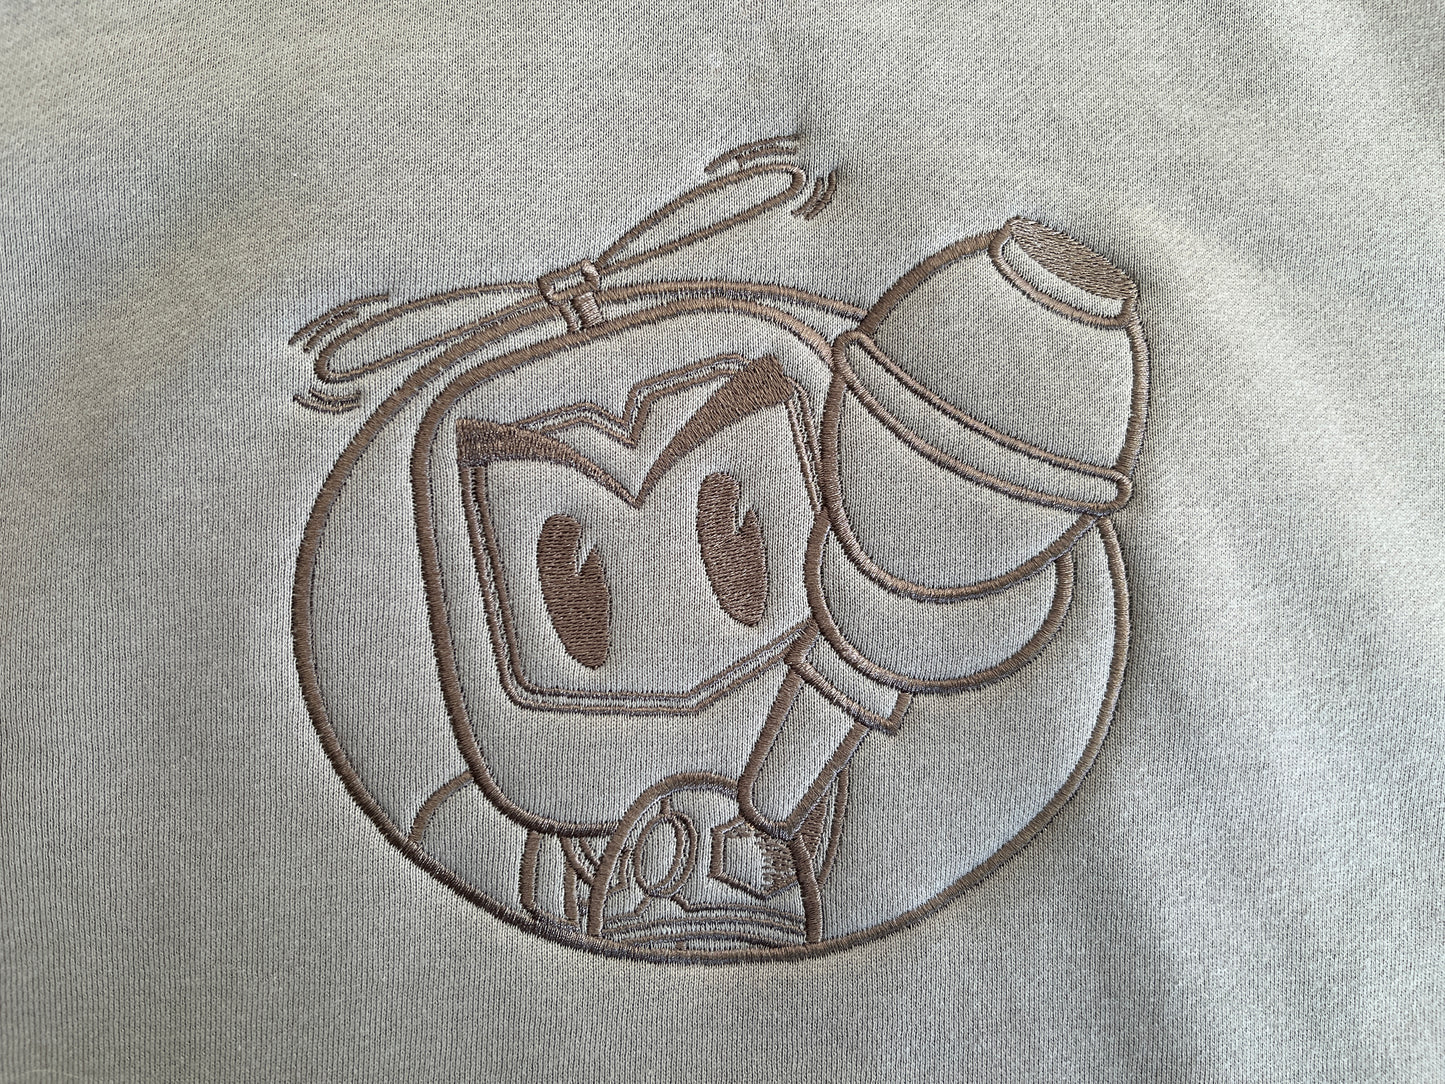 grenade man embroidered crew sweatshirt 31,000 stitches - SAND